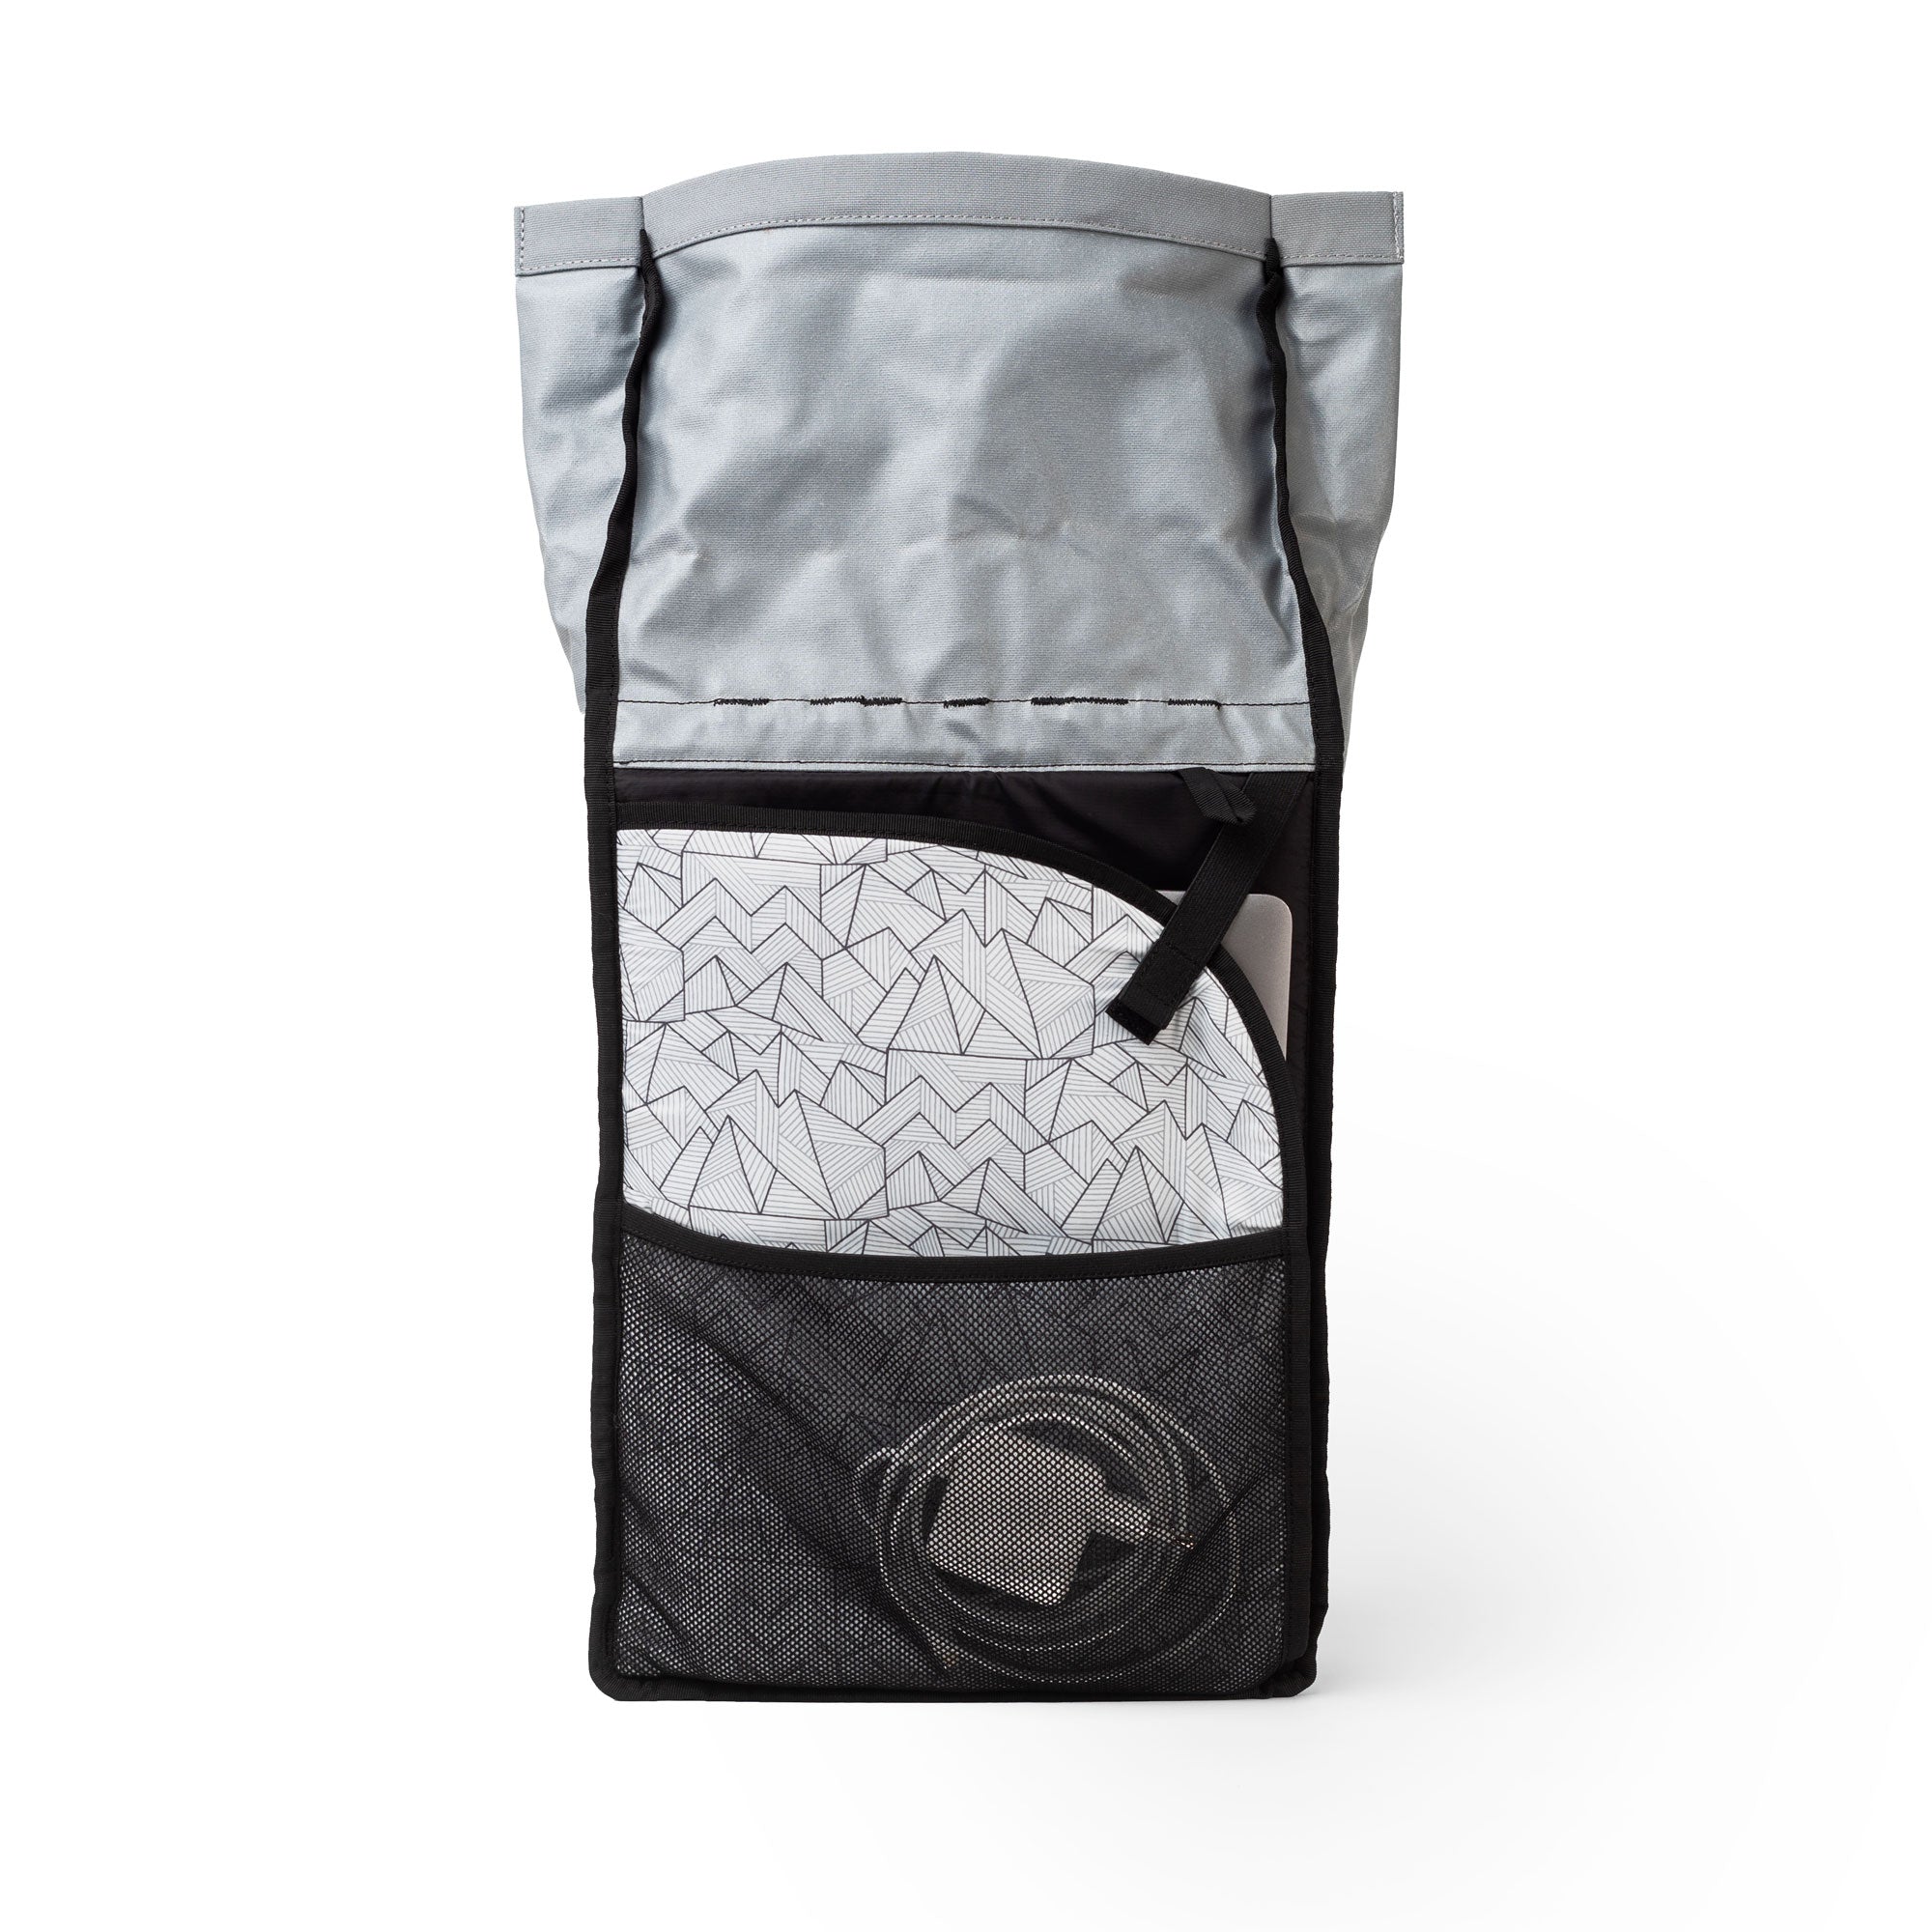 compartiment spacieux avec pochette en filet et housse matelassée pour ordinateur portable spacieux compartiments pour affaires du sac à dos vélo écologique de mero mero